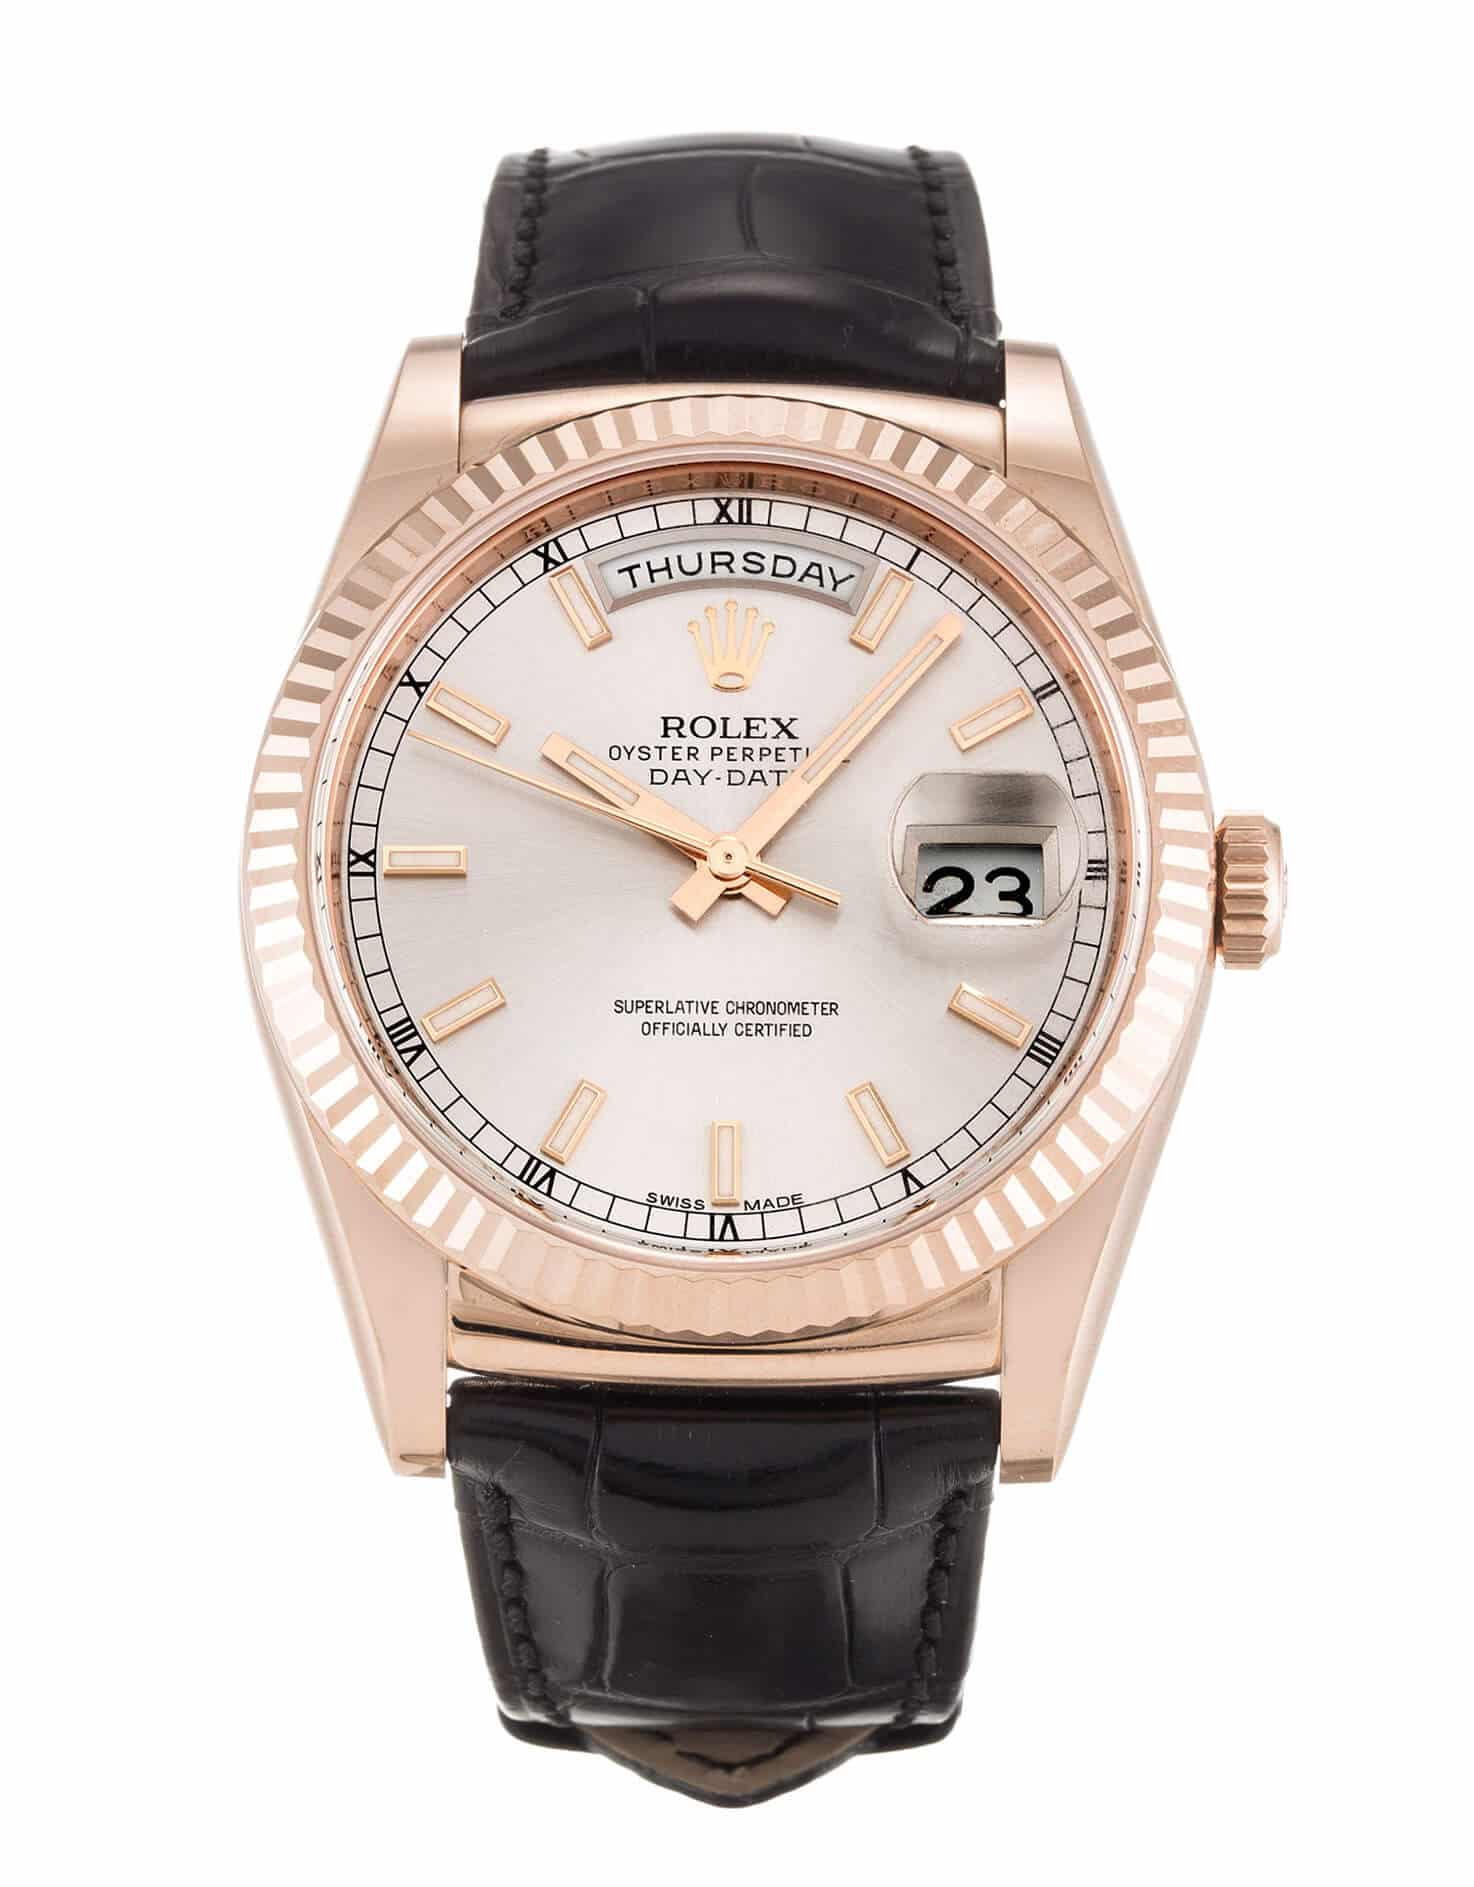 Replica Rolex Watch DayDate 118135